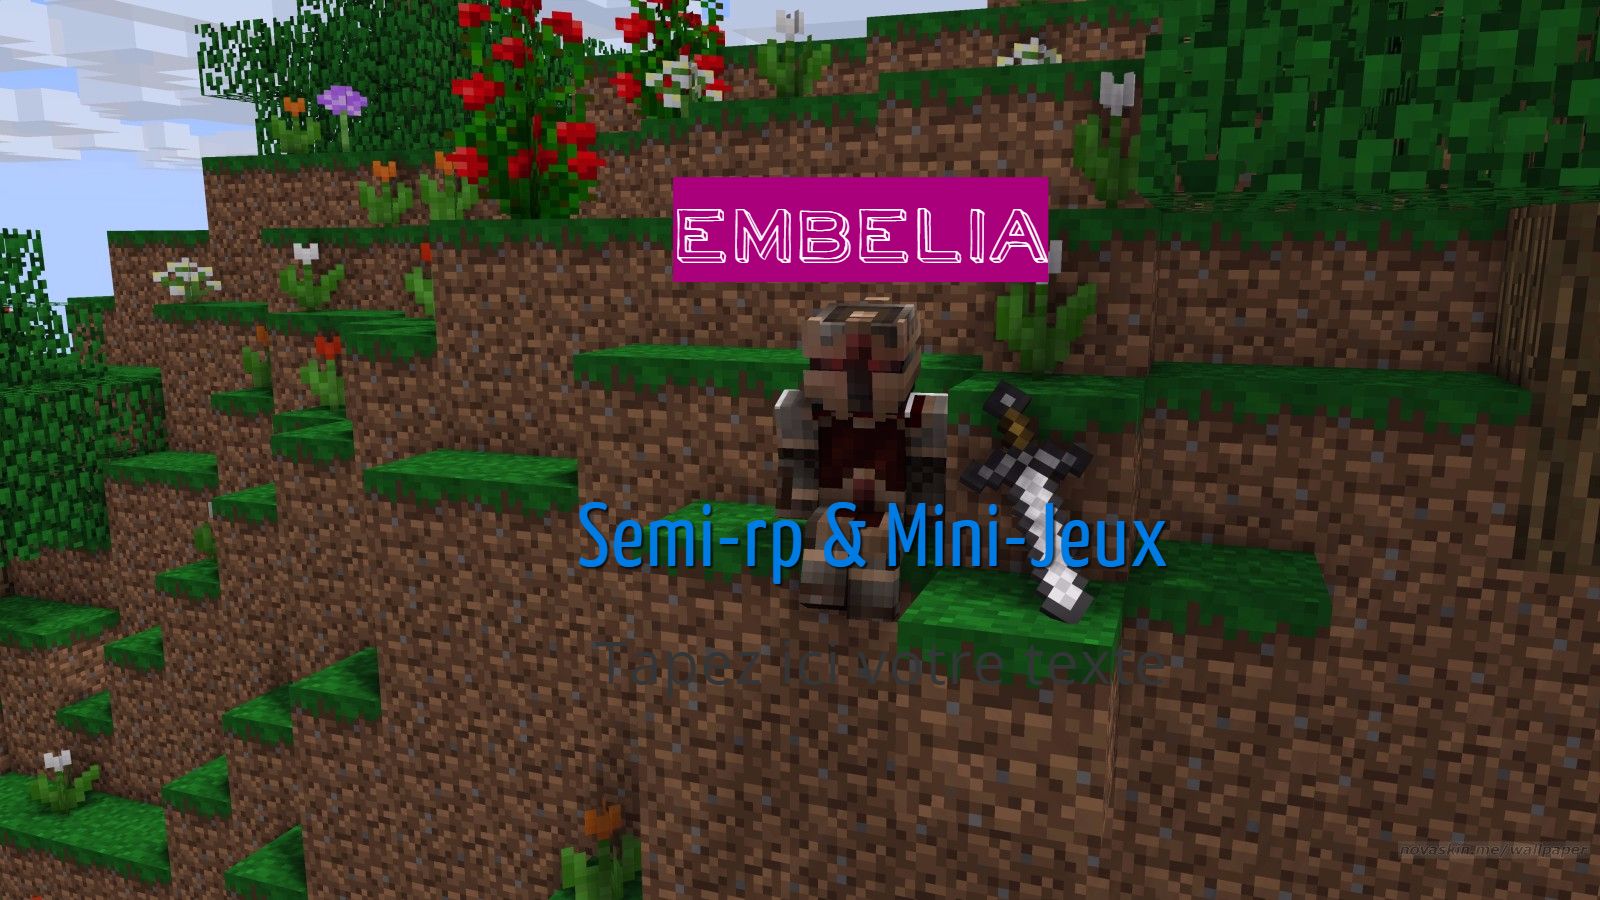 Embelia